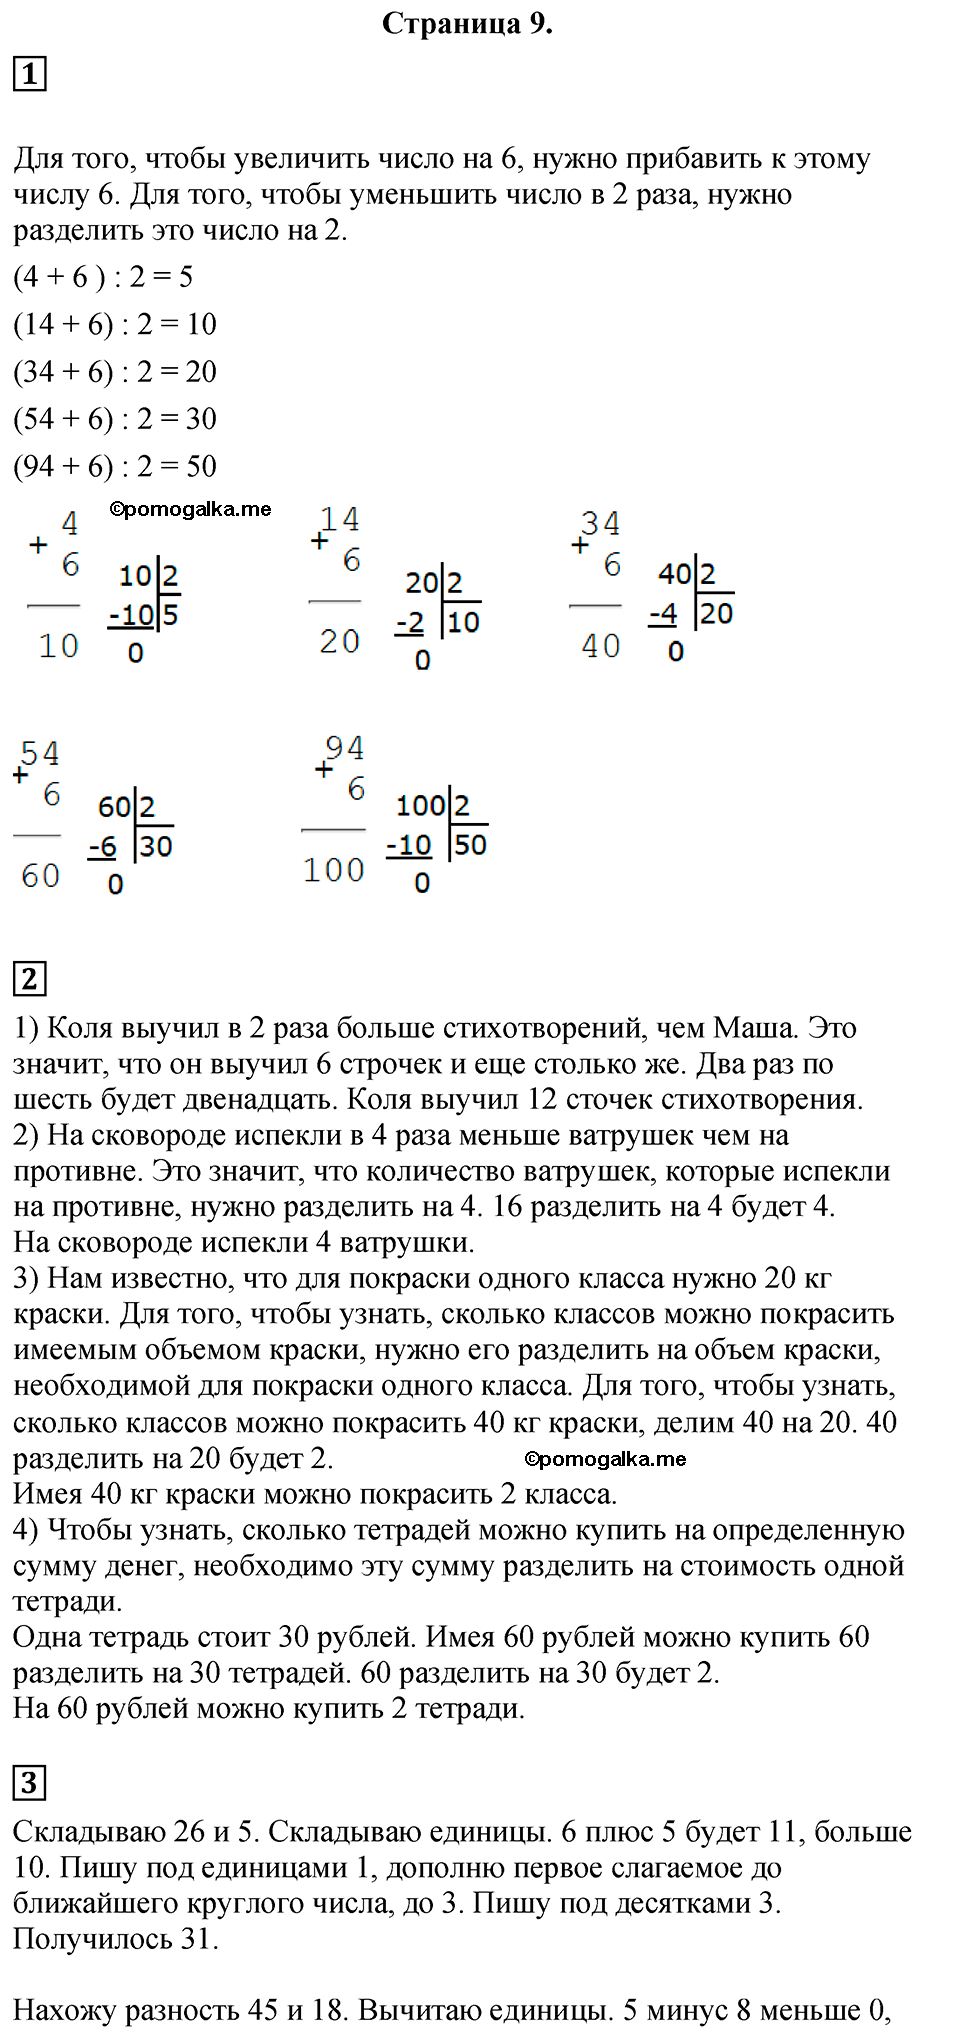 Страница №9 Часть 1 математика 3 класс Дорофеев